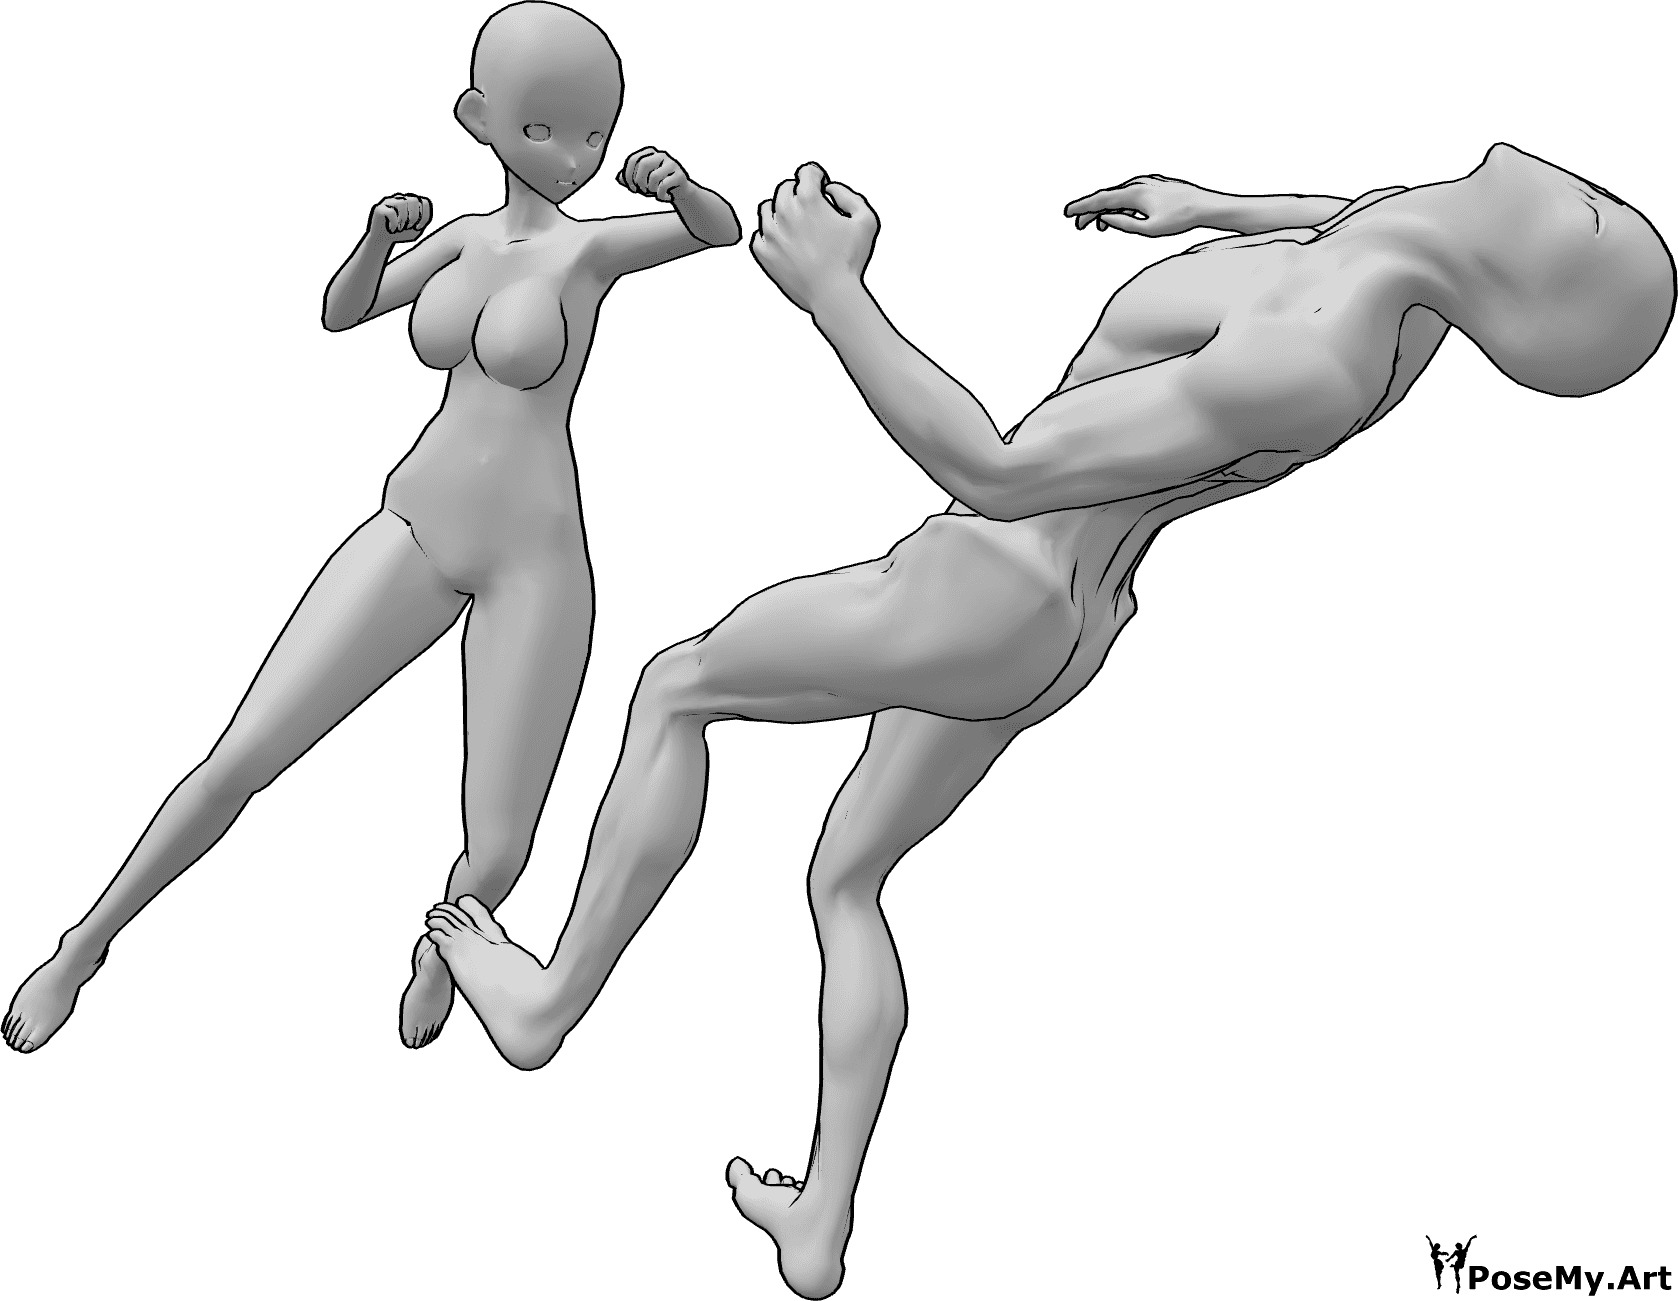 Referencia de poses- Anime femenino puñetazo pose - El enemigo cae hacia atrás inconscientemente de un puñetazo en la cabeza